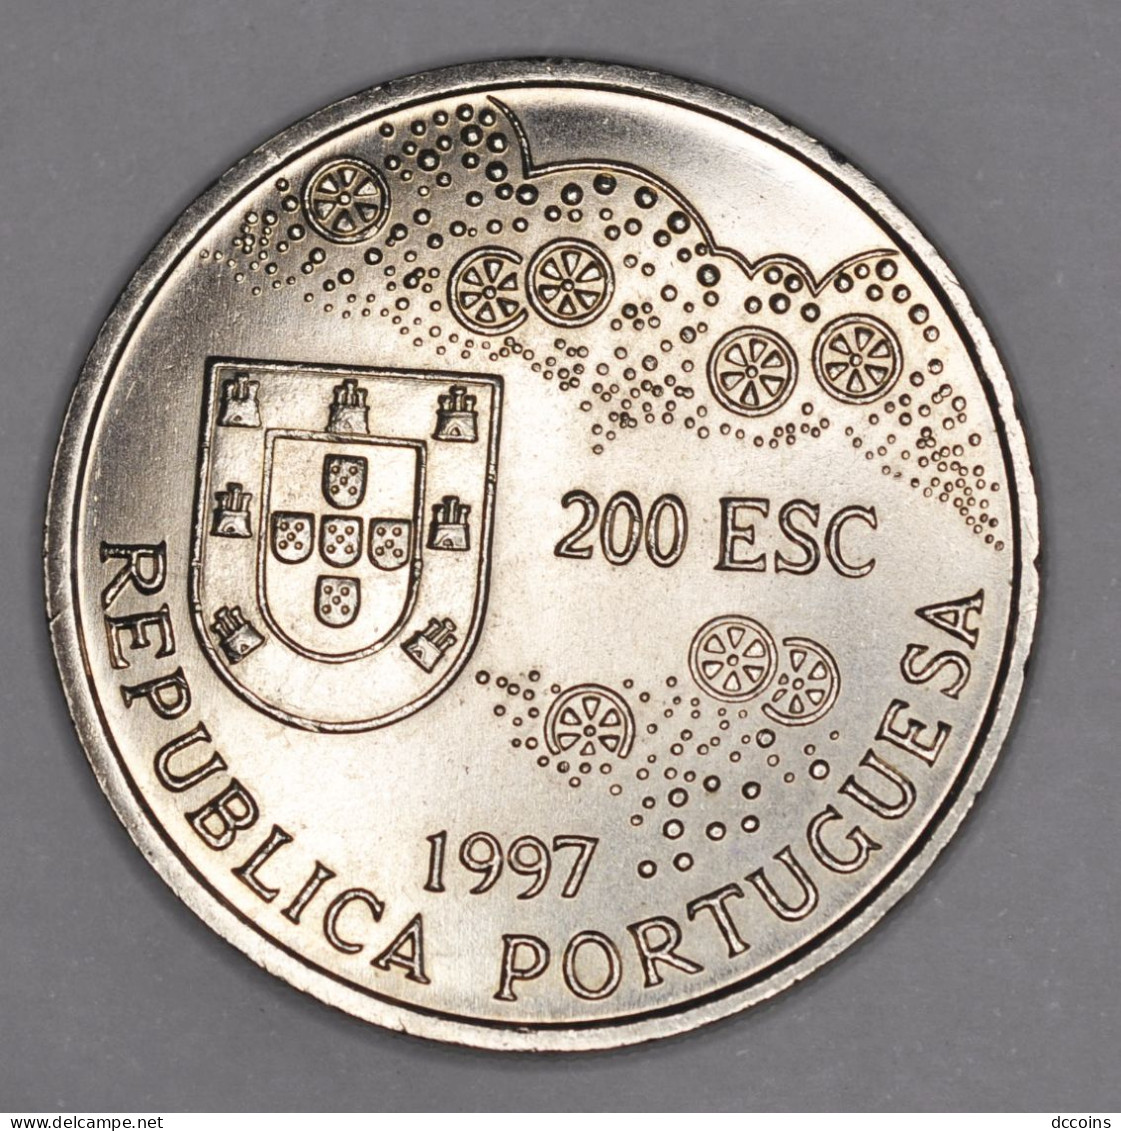 Descobrimentos Portugueses 8ª Serie 200  Esc. Historia Do Japão Year 1997 - Portugal